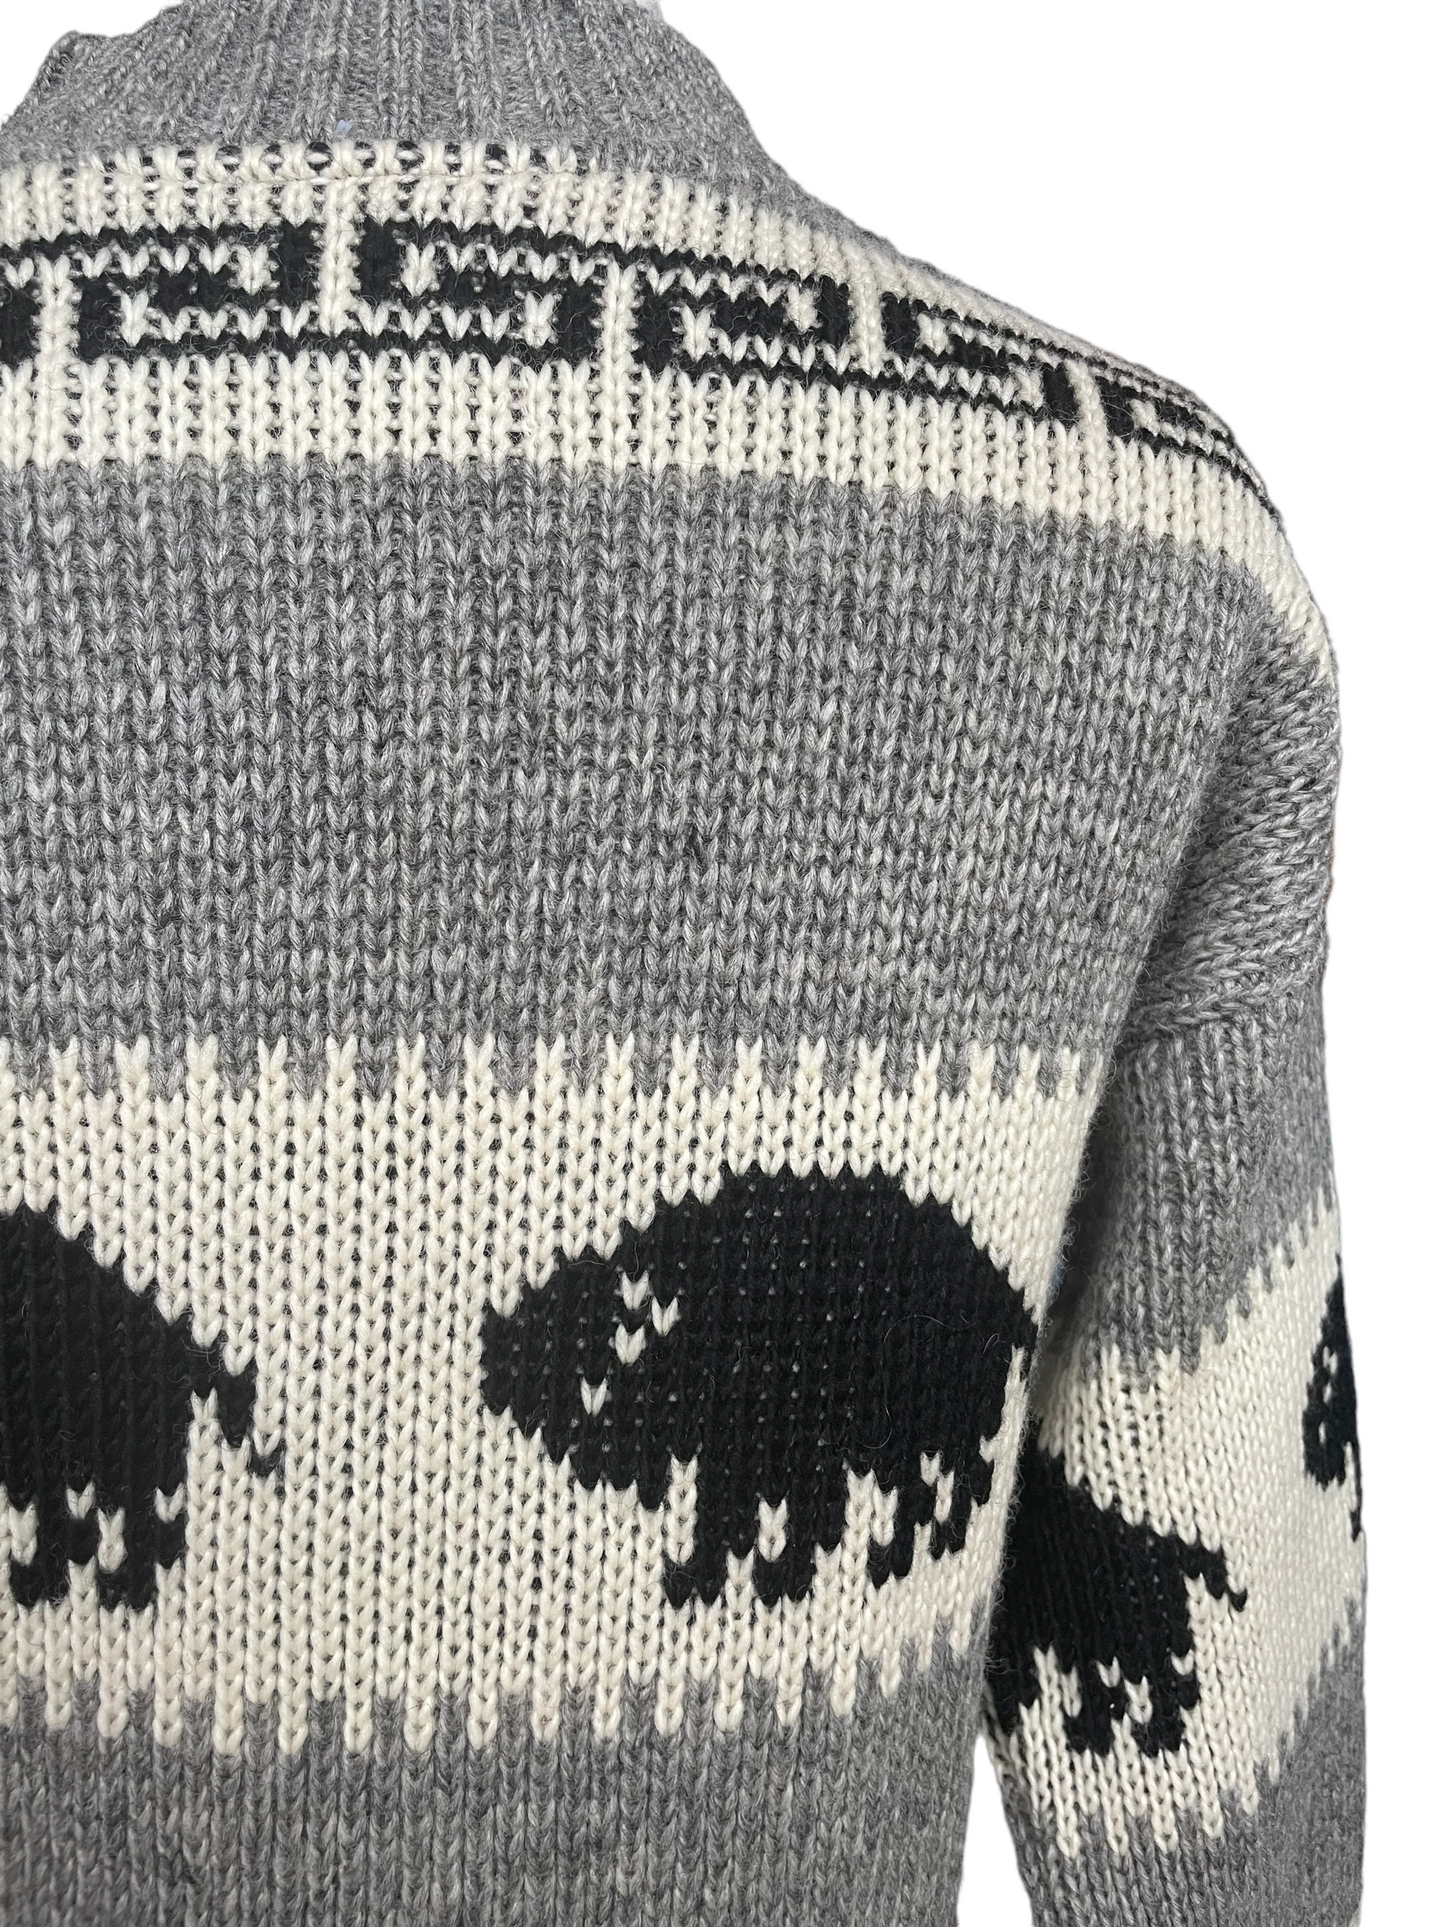 Vintage Brown Bison Wool Sweater Back rright shoulder view.